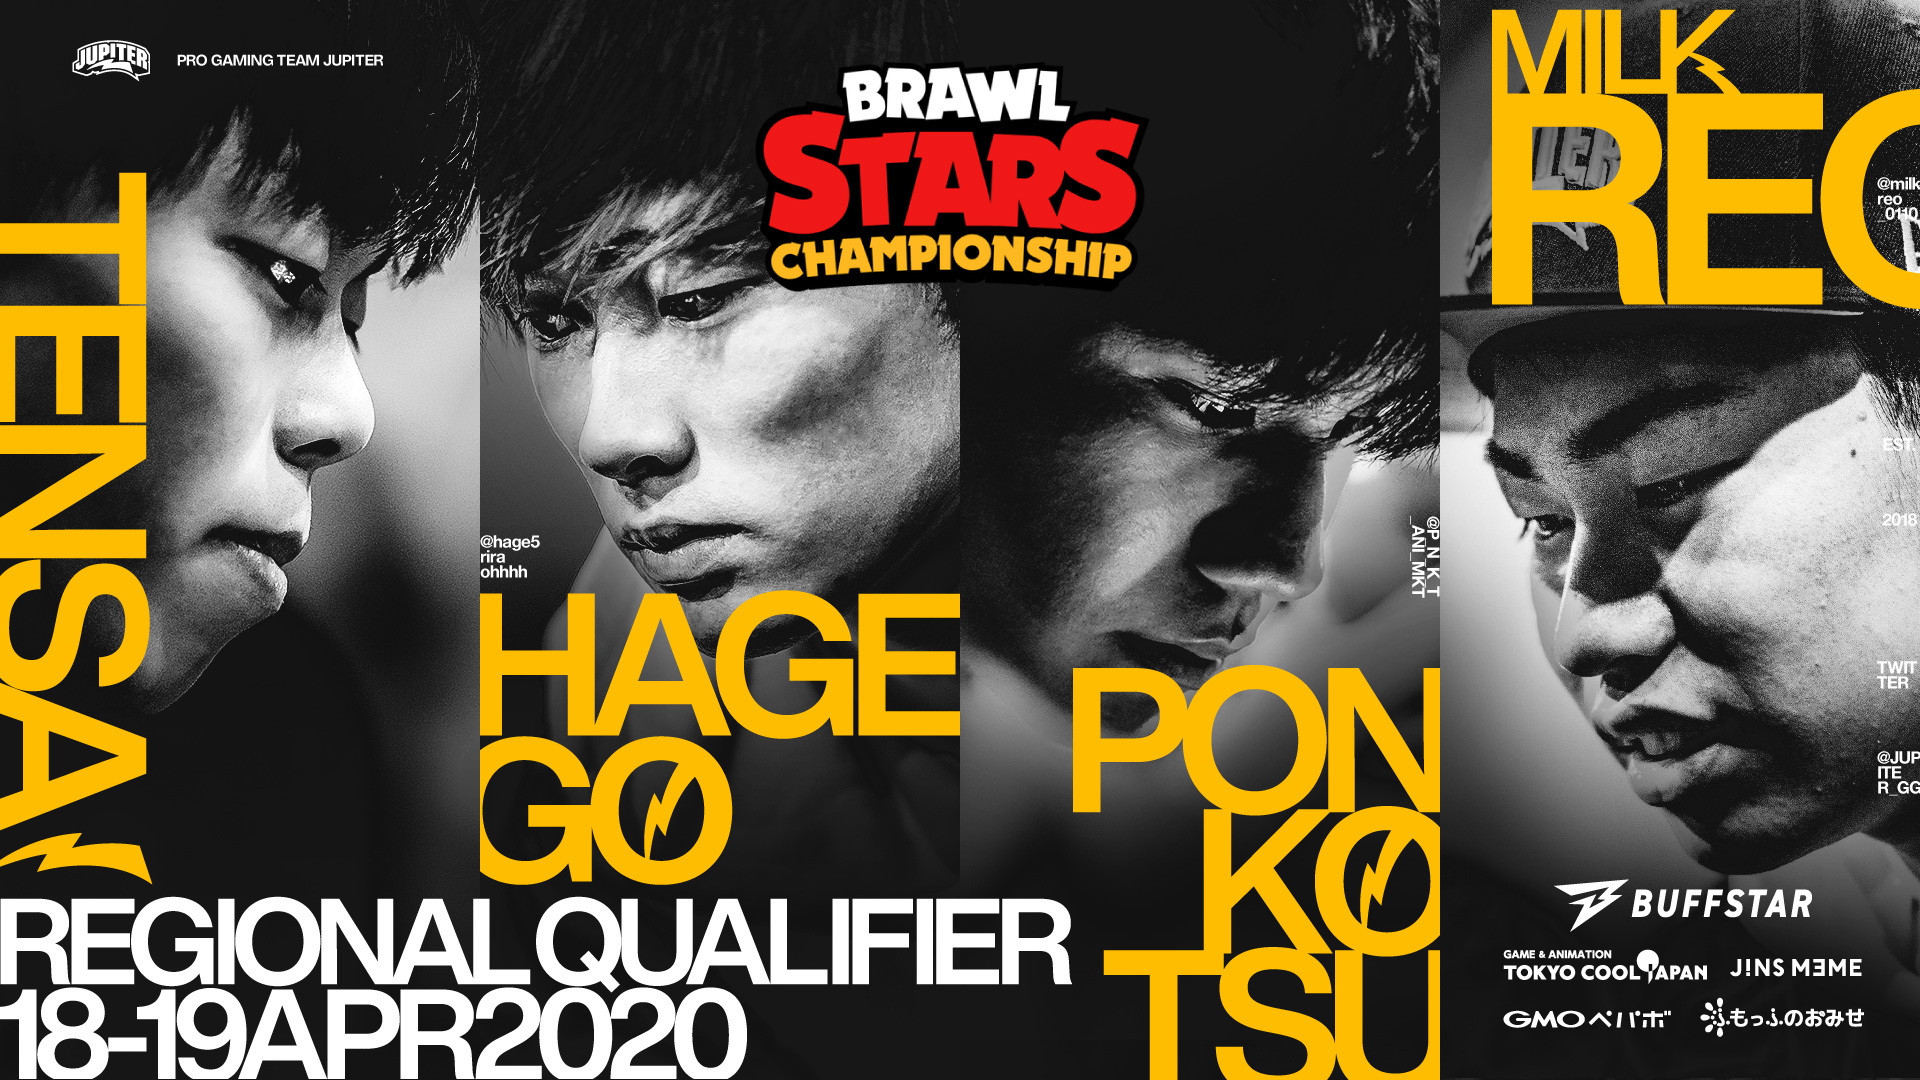 ブロスタ – 『Brawl Stars Championship』Regional Online Qualifier April Japan に出場